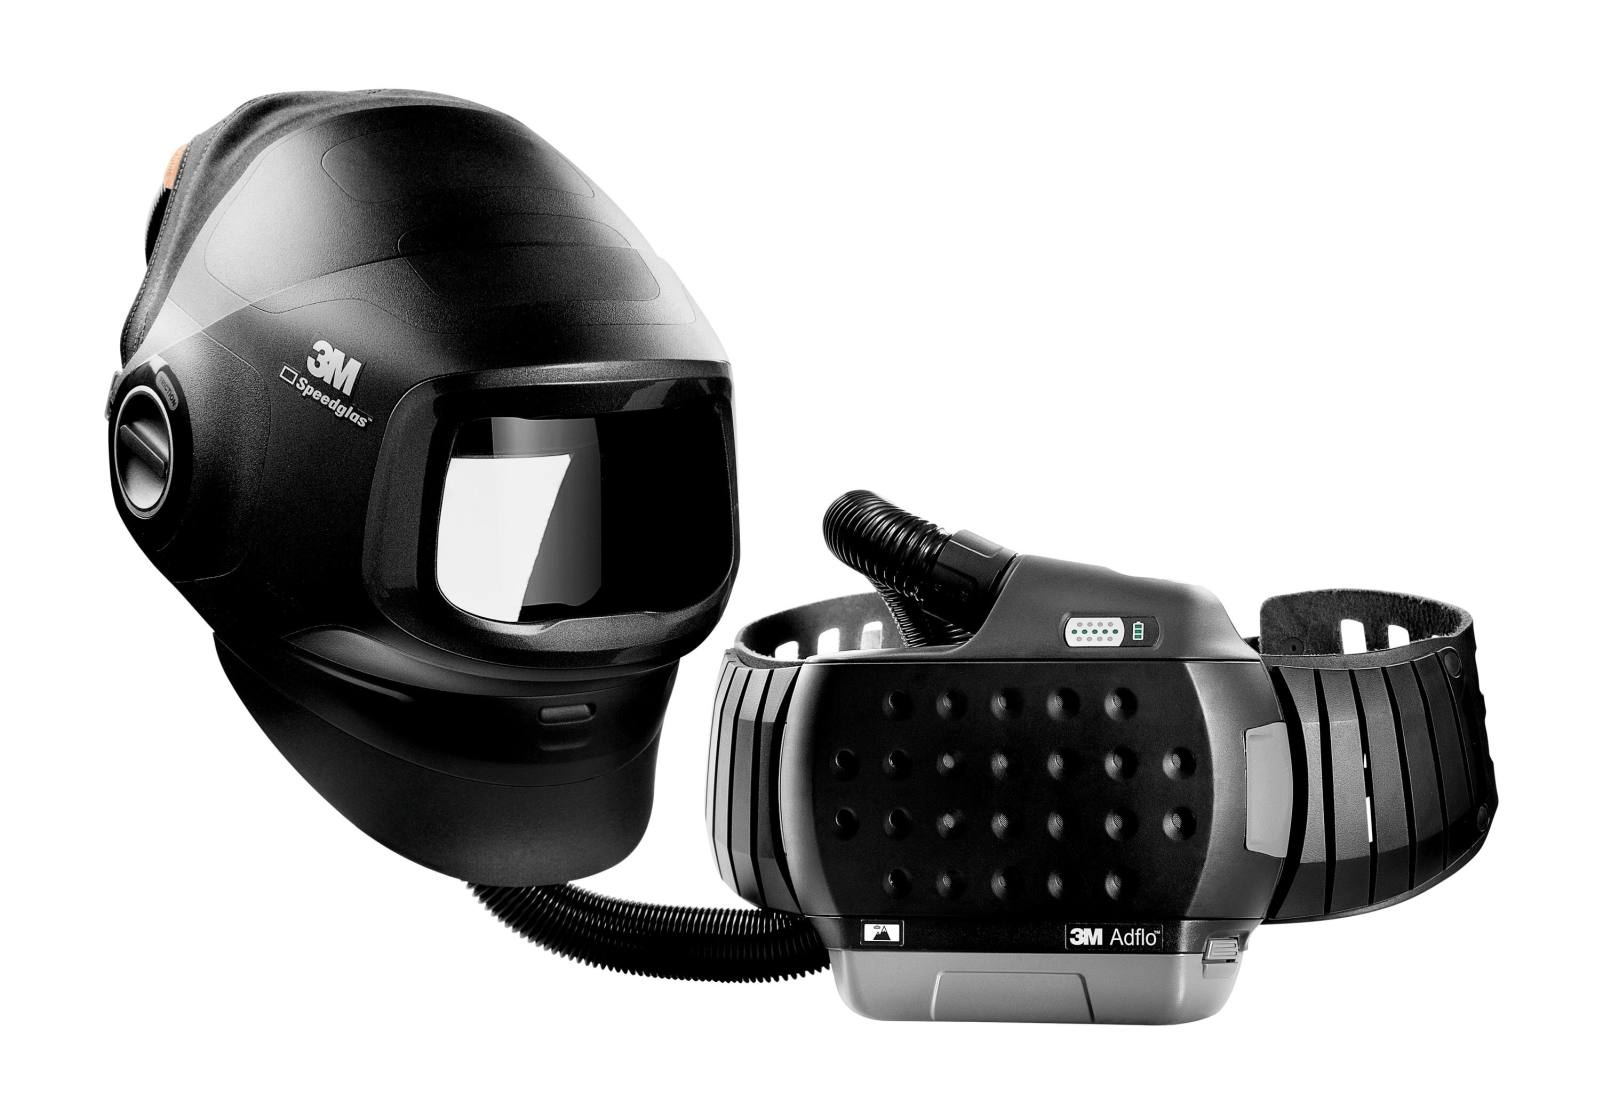 3M Speedglas Máscara de soldadura de alto rendimiento G5-01 con protección respiratoria de soplado 3M Adflo, batería de alto rendimiento y bolsa de almacenamiento, sin filtro de soldadura, H617800